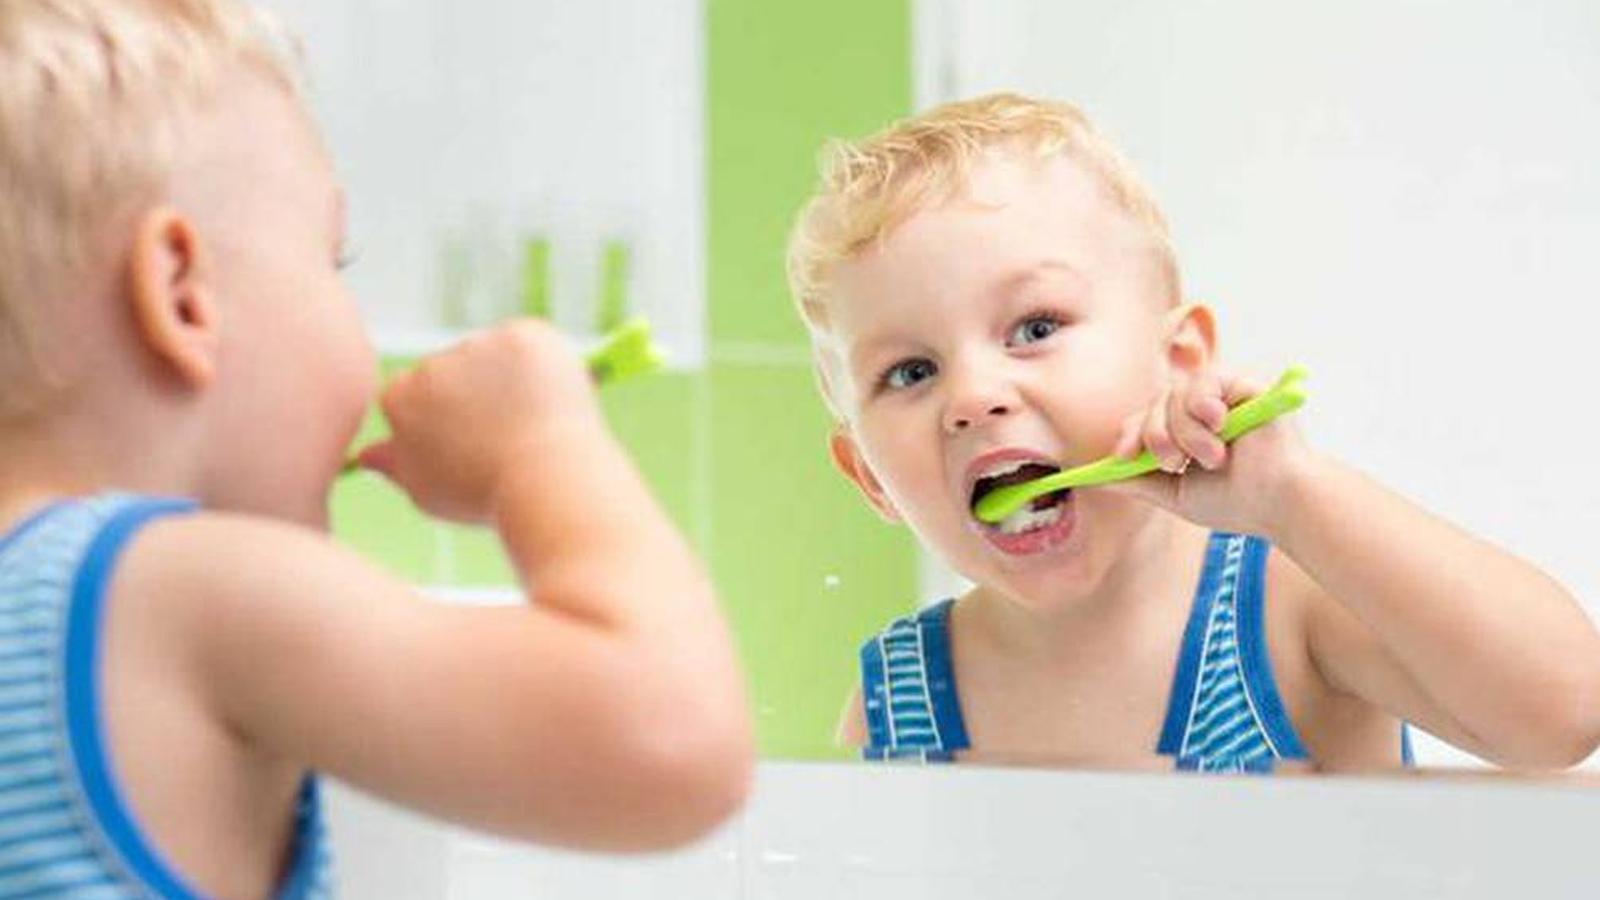  Răng trẻ em bị vàng : Nguyên nhân và cách điều trị hiệu quả